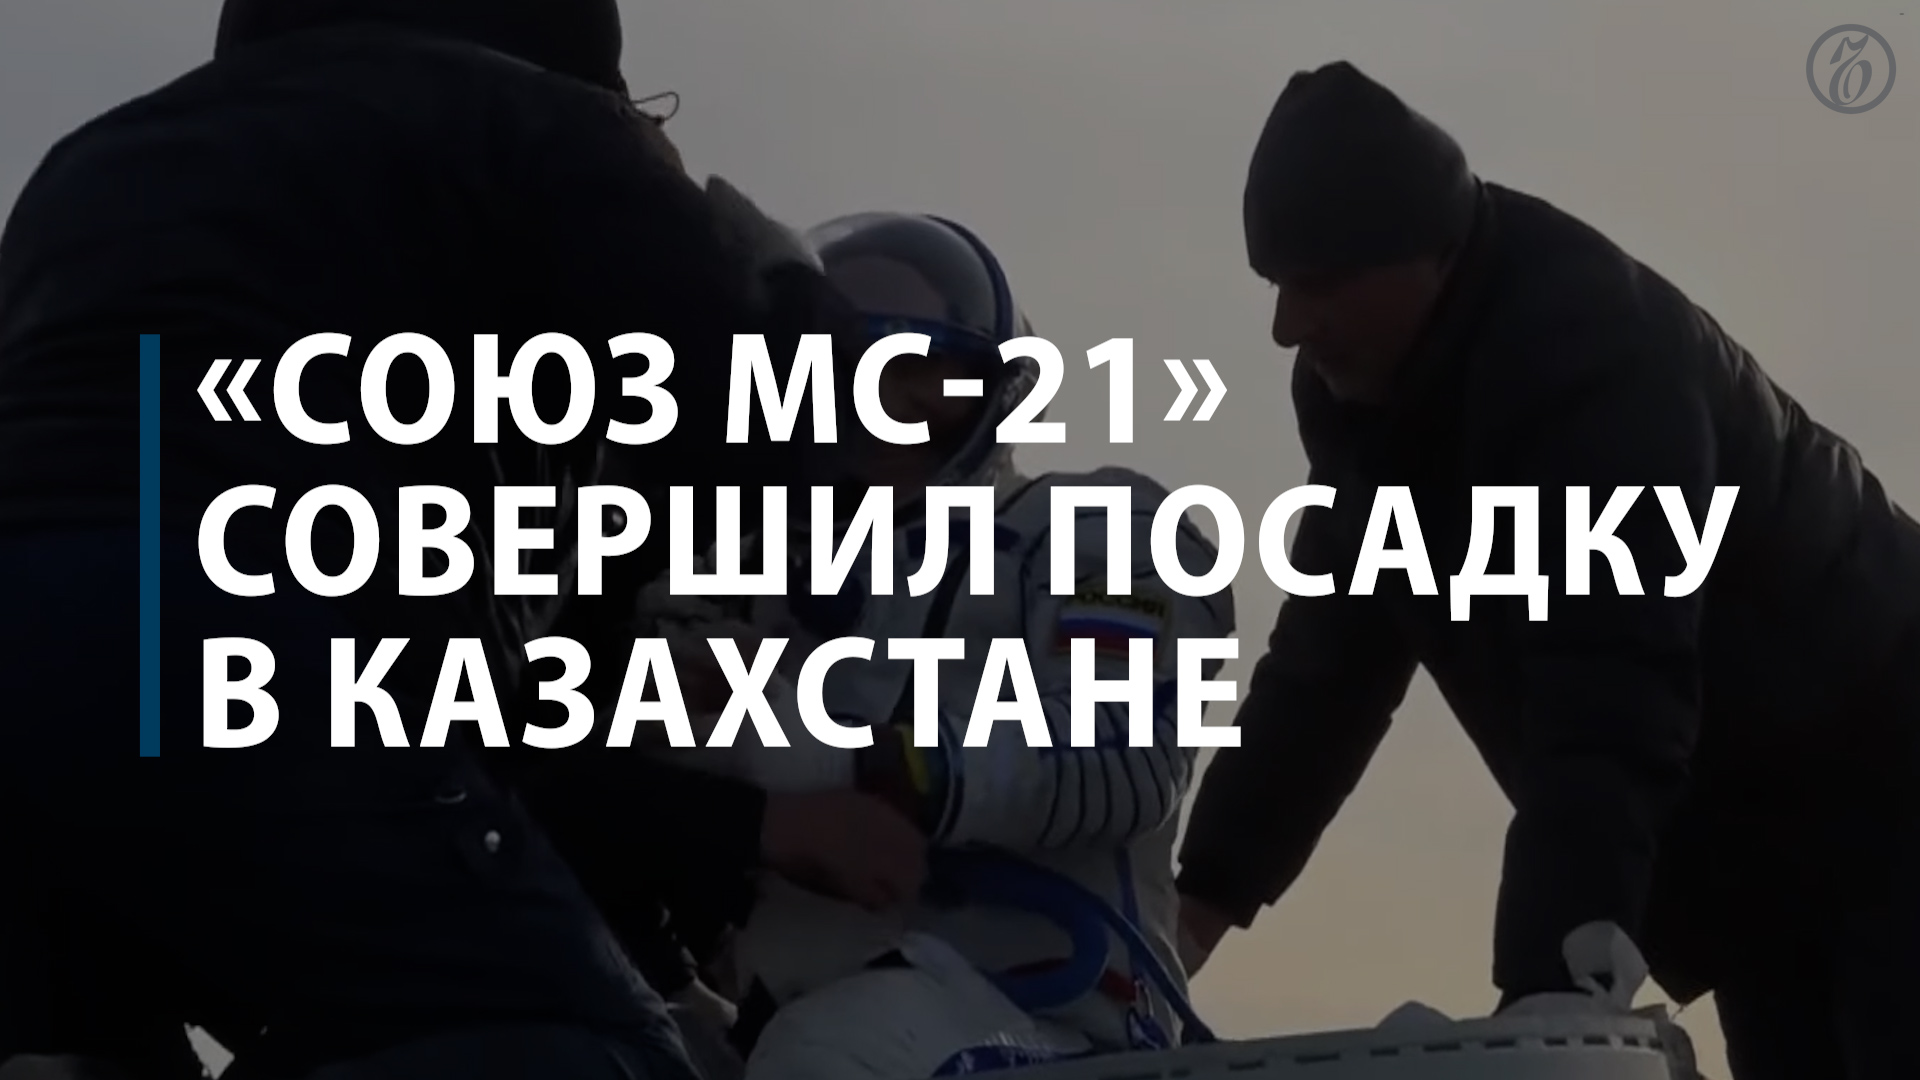 «Союз МС-21» совершил посадку в Казахстане